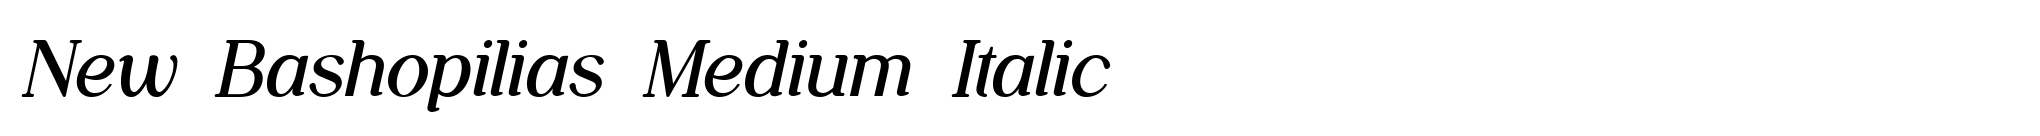 New Bashopilias Medium Italic image